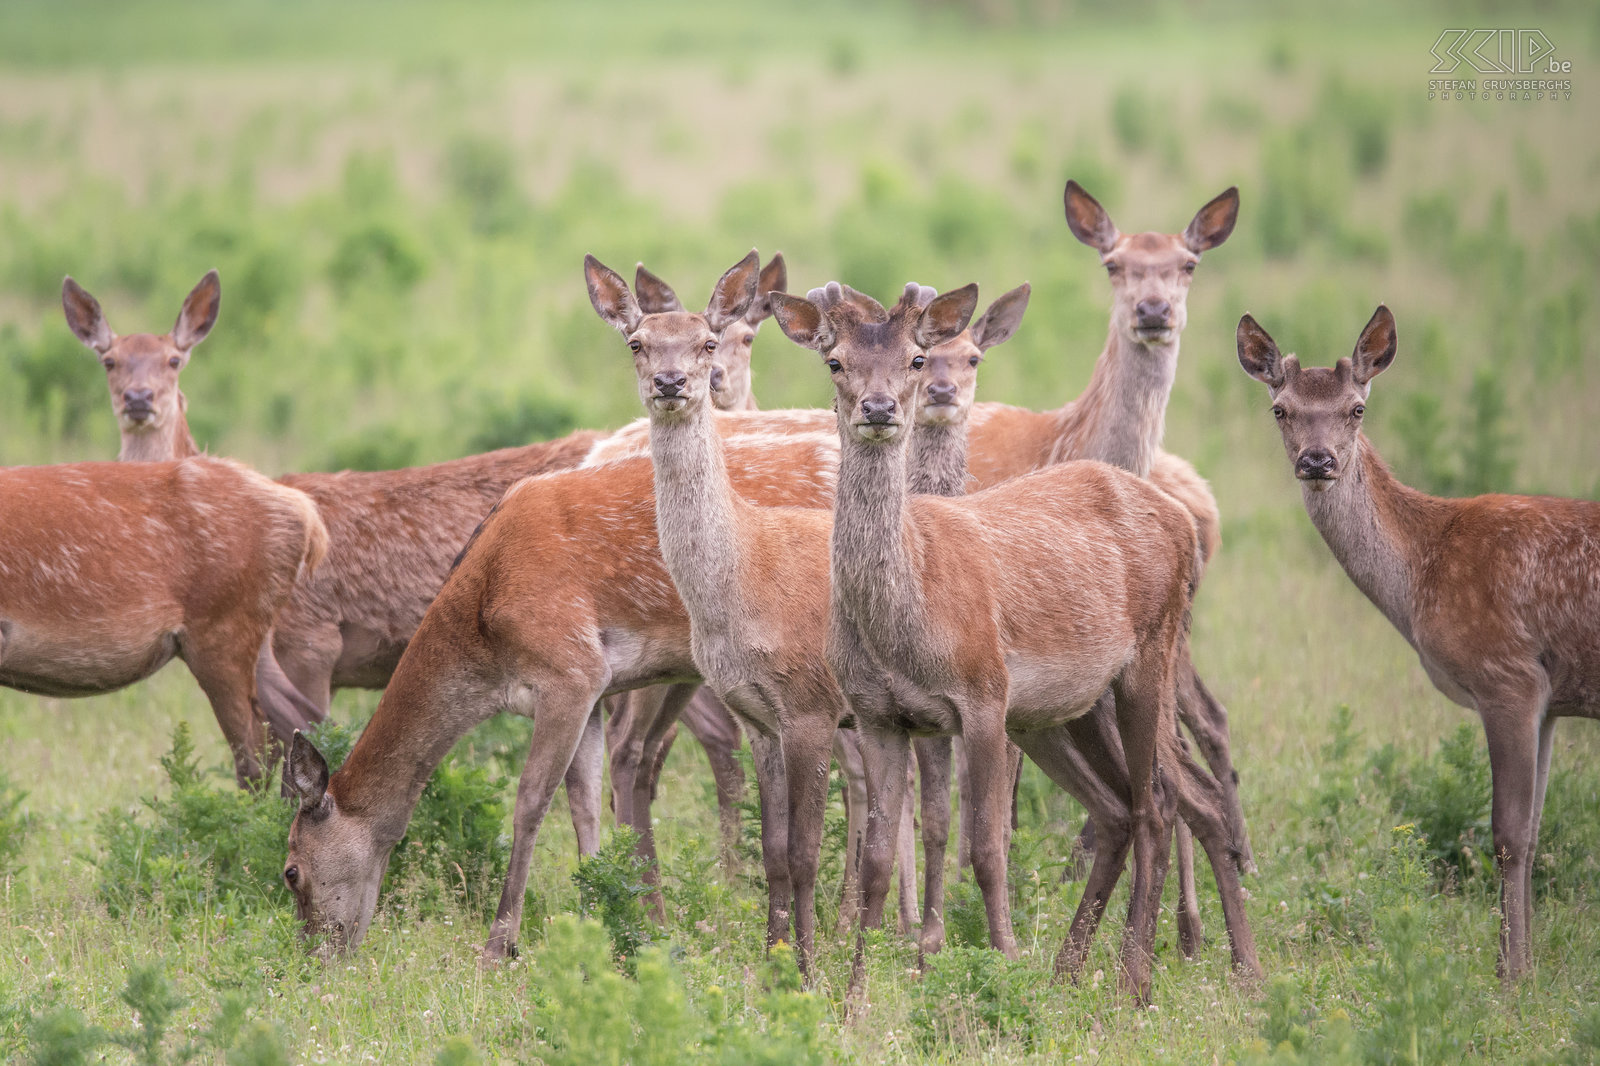 Oostvaardersplassen - Hindes Het nationale park Oostvaardersplassen in Flevoland heeft een populatie van ongeveer 3300 edelherten (Cervus elaphus). Het is het grootste soort van herten in Europa. De vrouwelijke herten worden hindes genoemd en ze leven in grote groepen op de vlaktes.<br />
 Stefan Cruysberghs